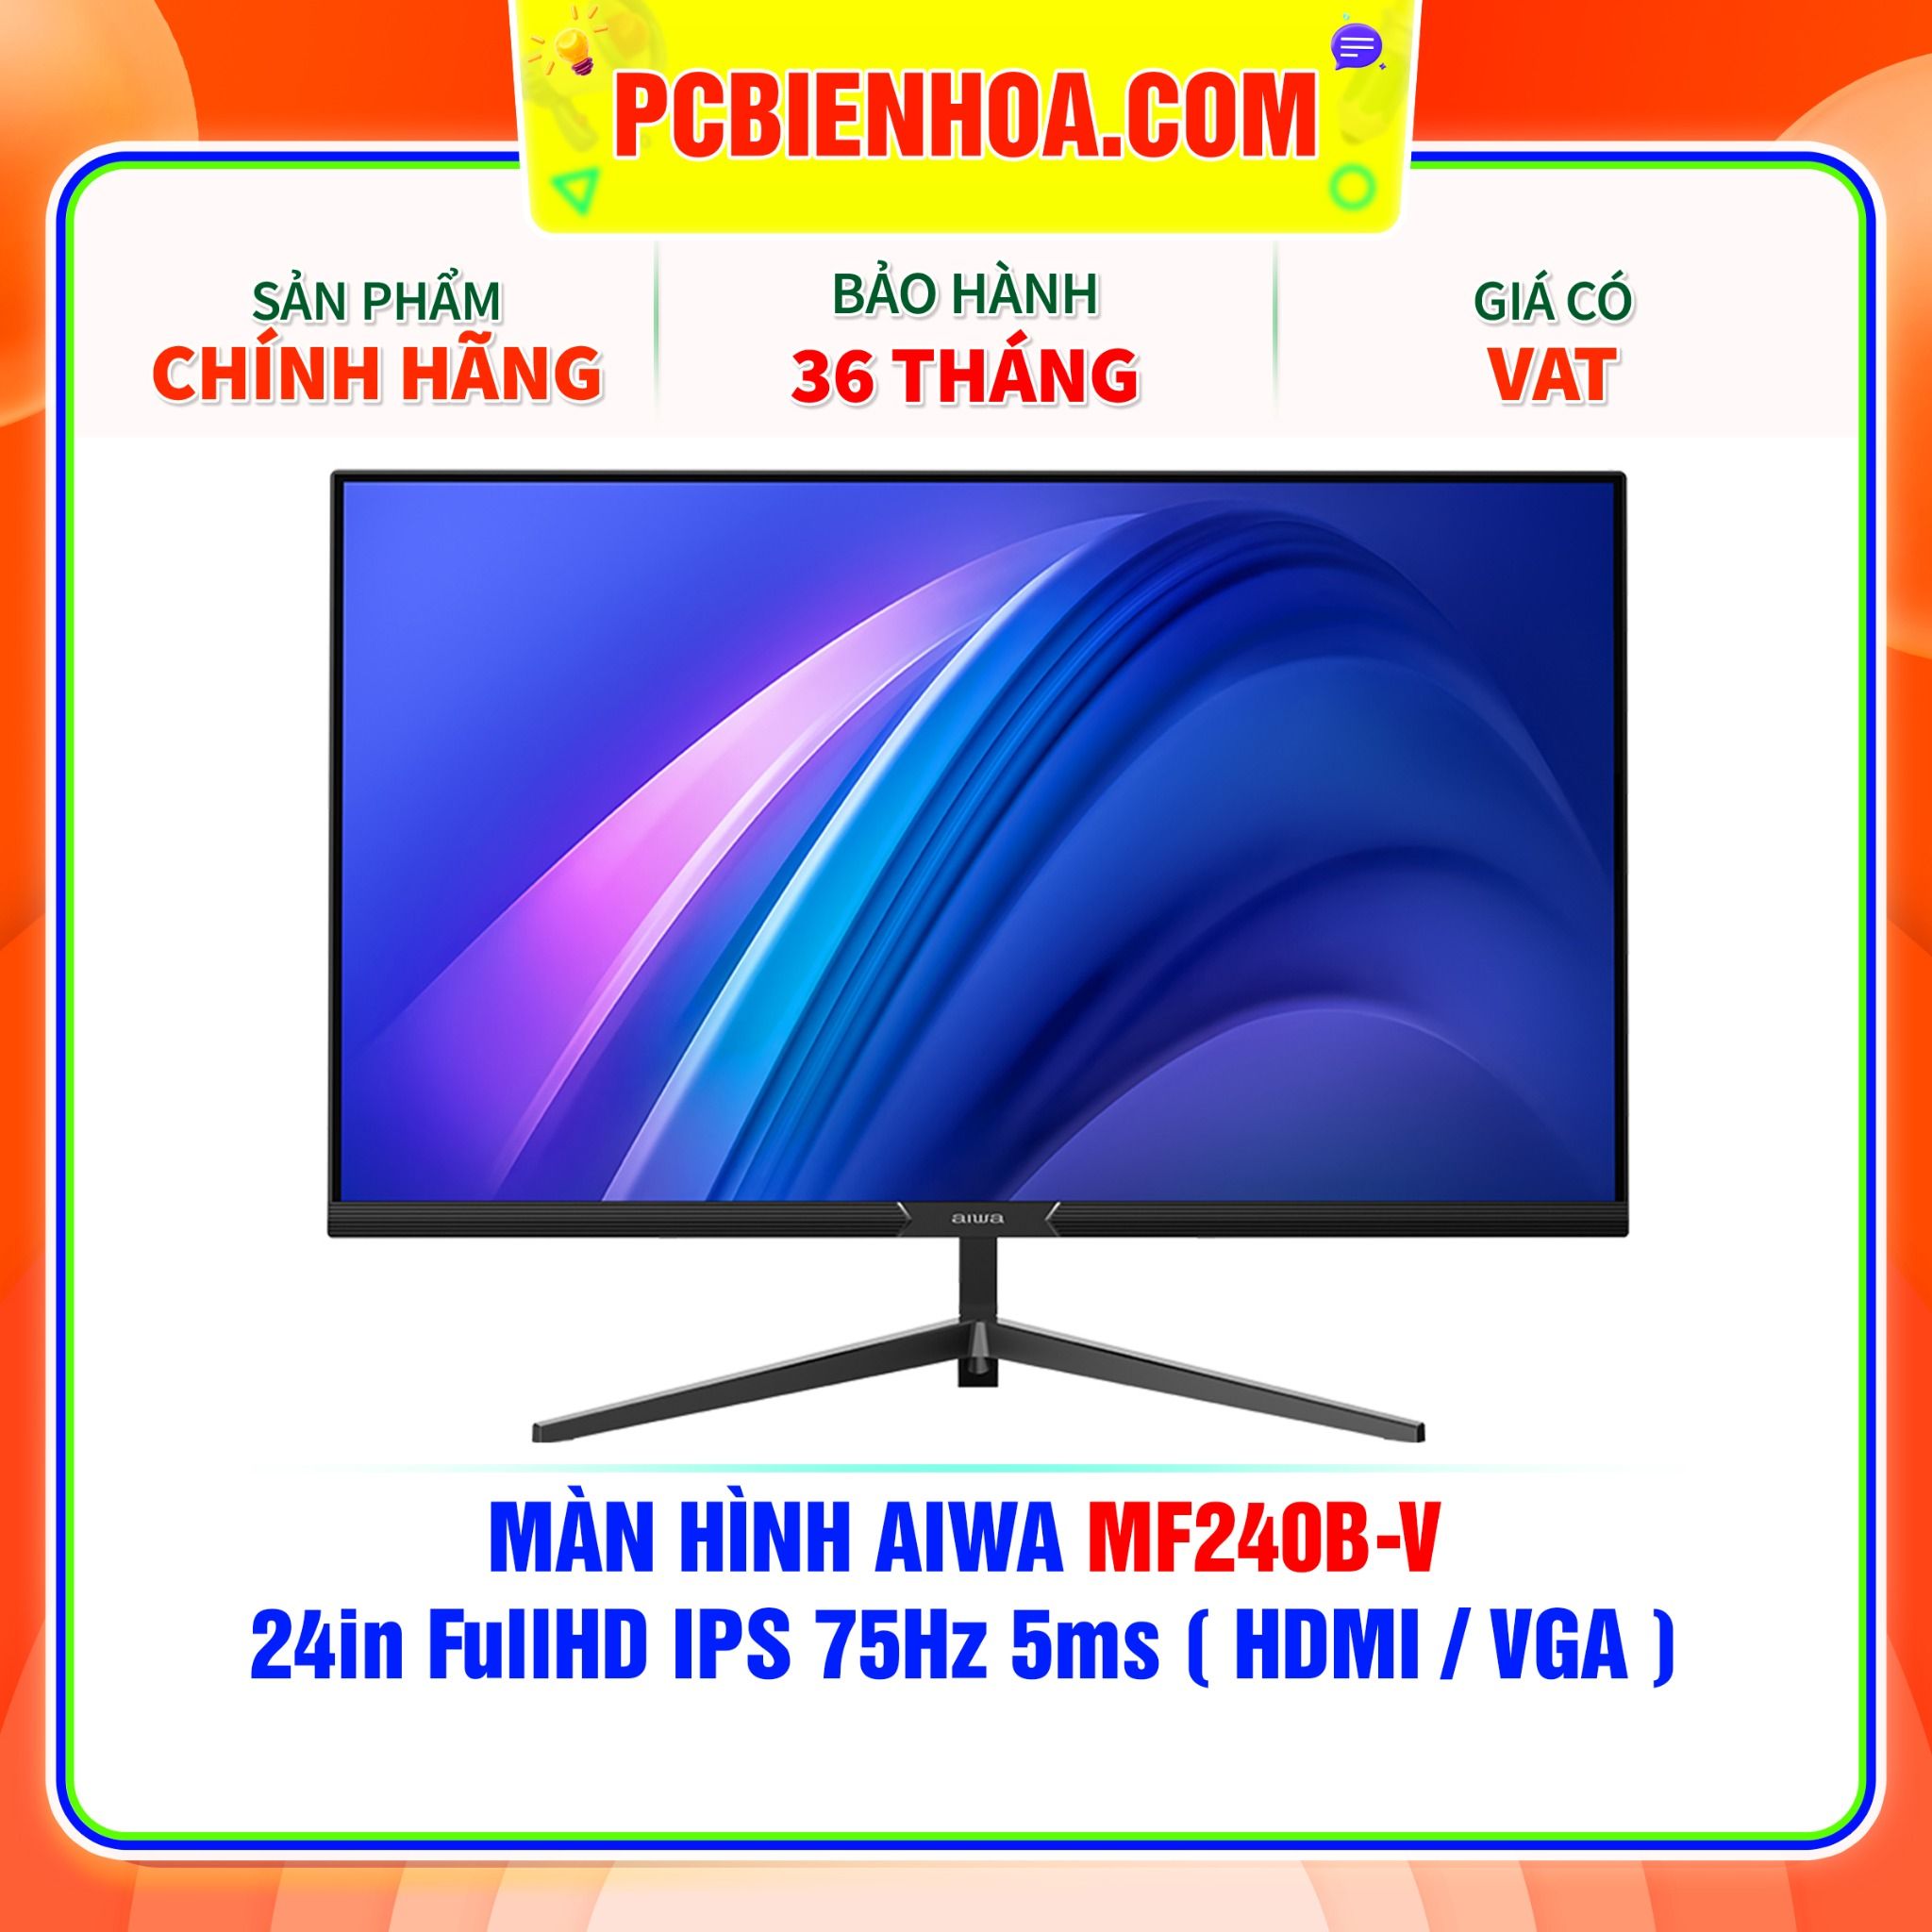  MÀN HÌNH AIWA MF240B-V 24in FullHD IPS 75Hz 5ms ( HDMI / VGA ) 